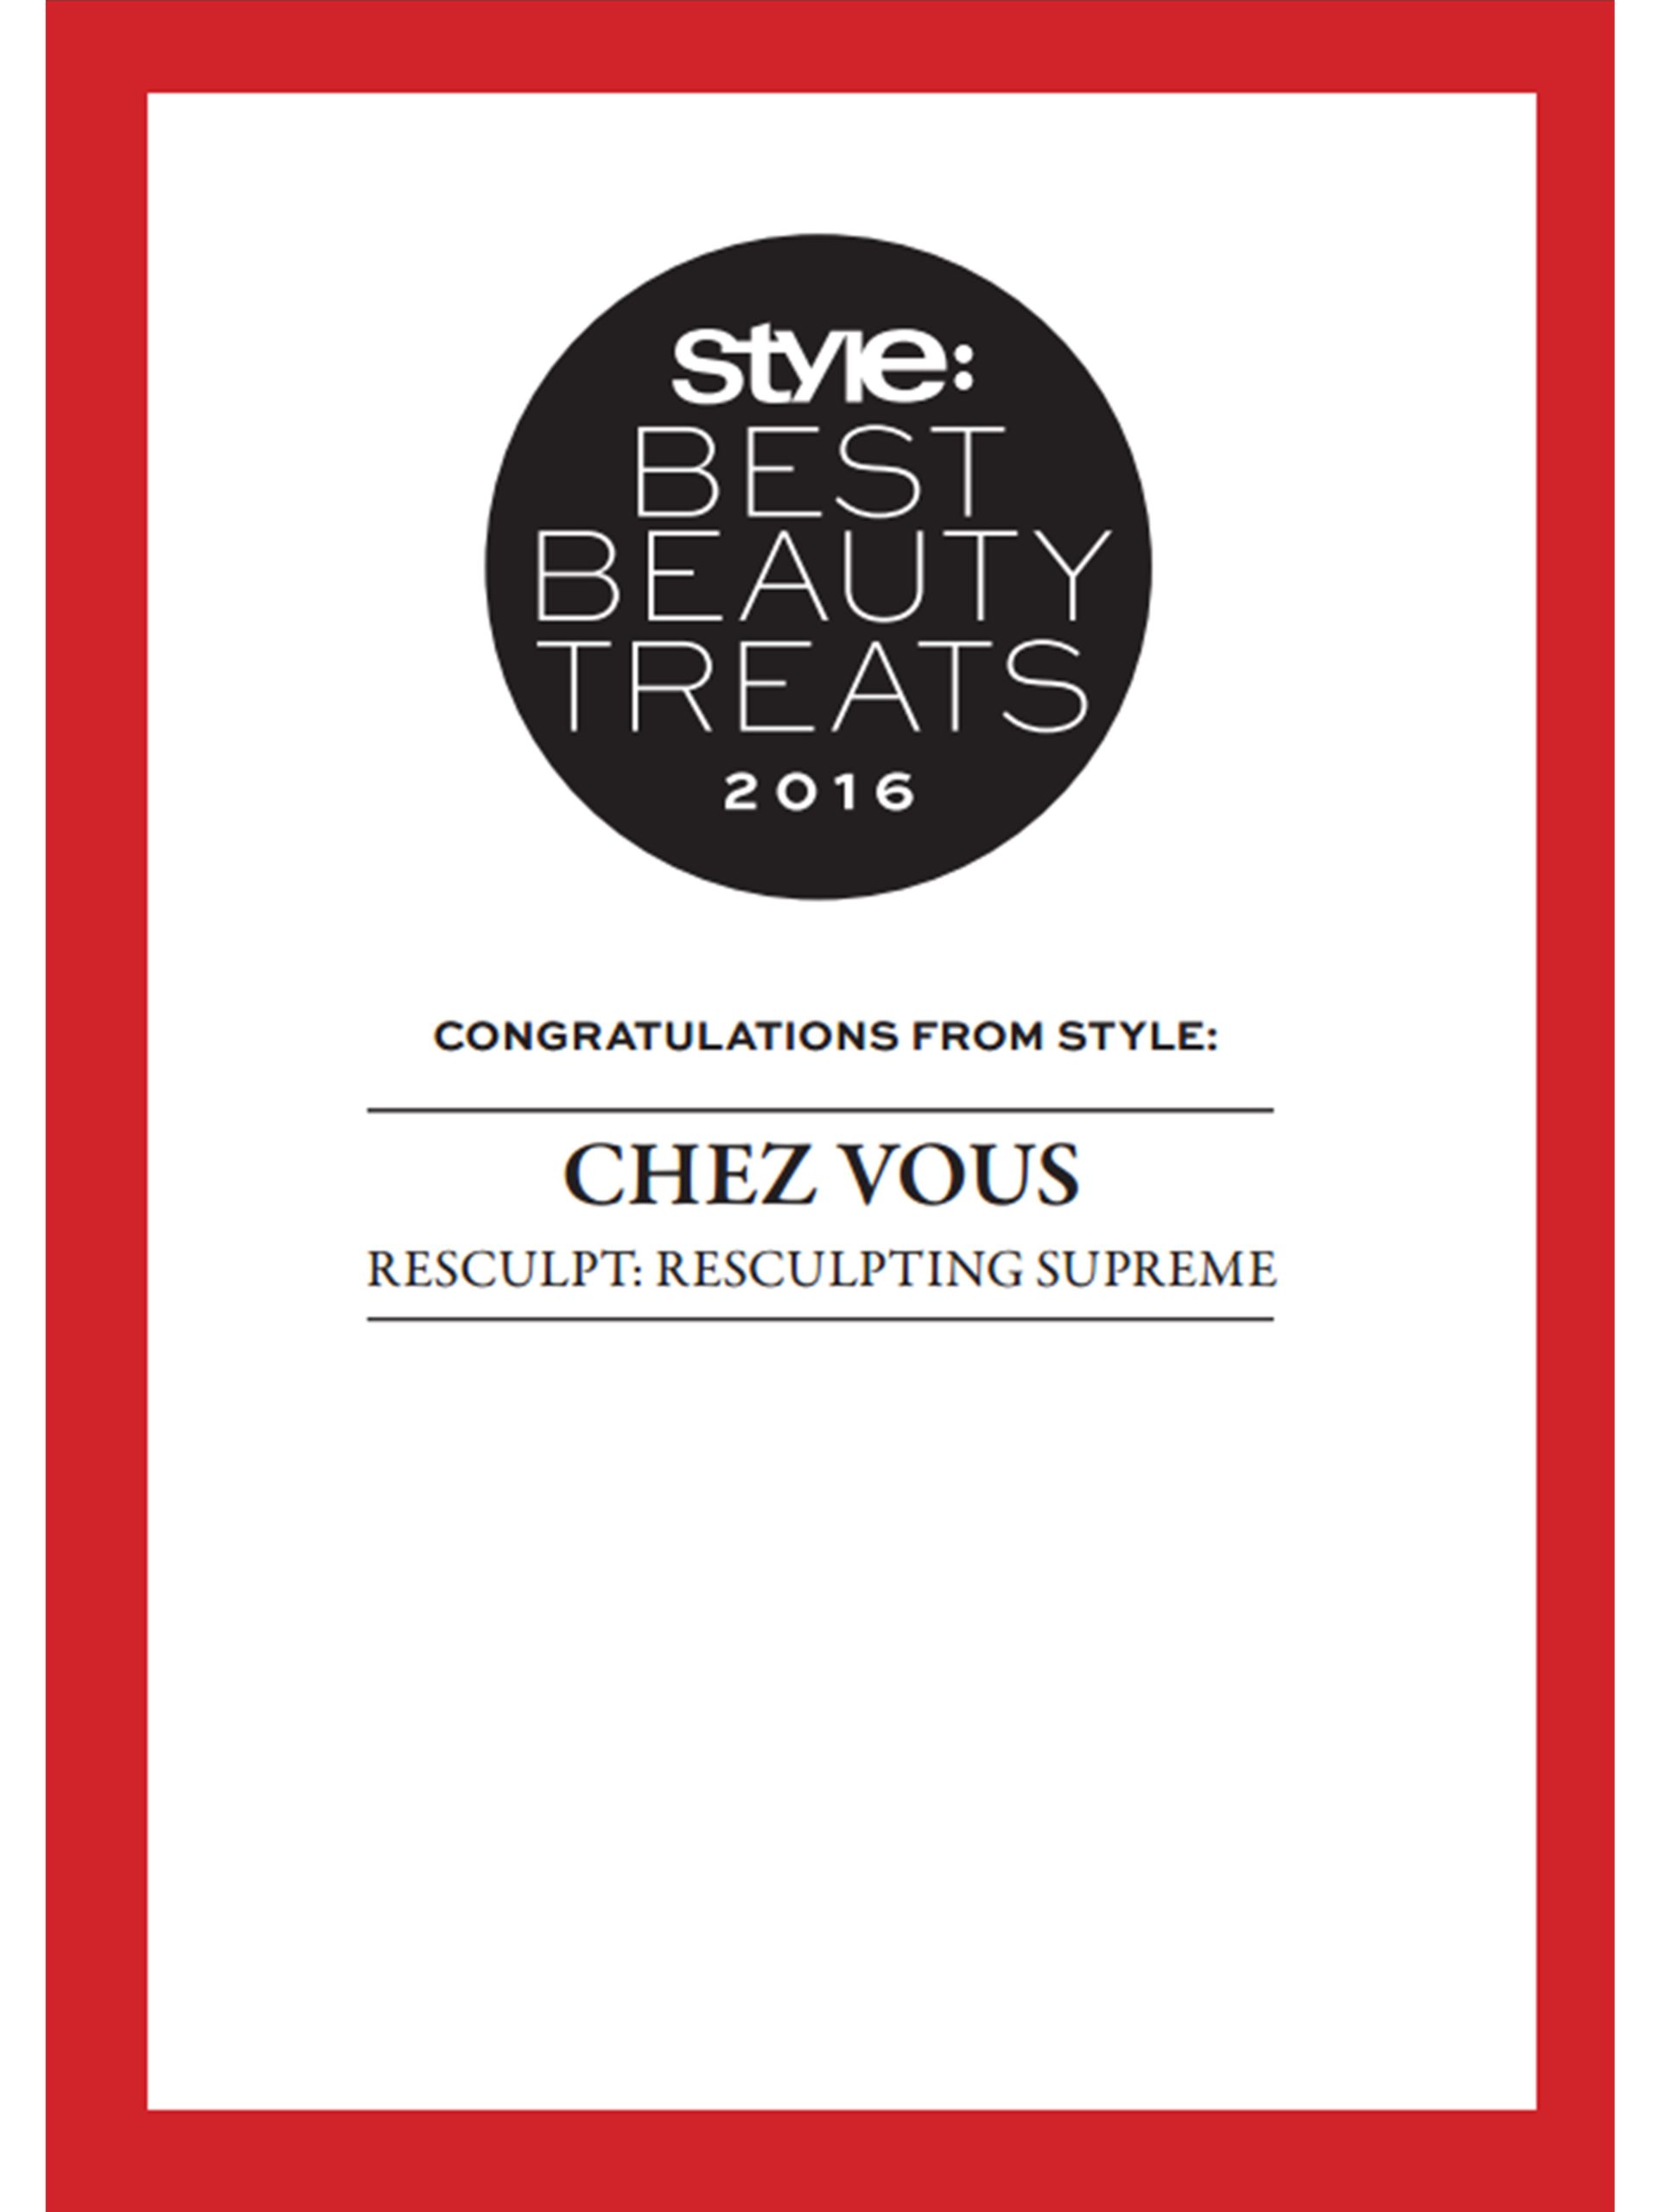 STYLE Best Beauty Treats: Chez Vous Salon